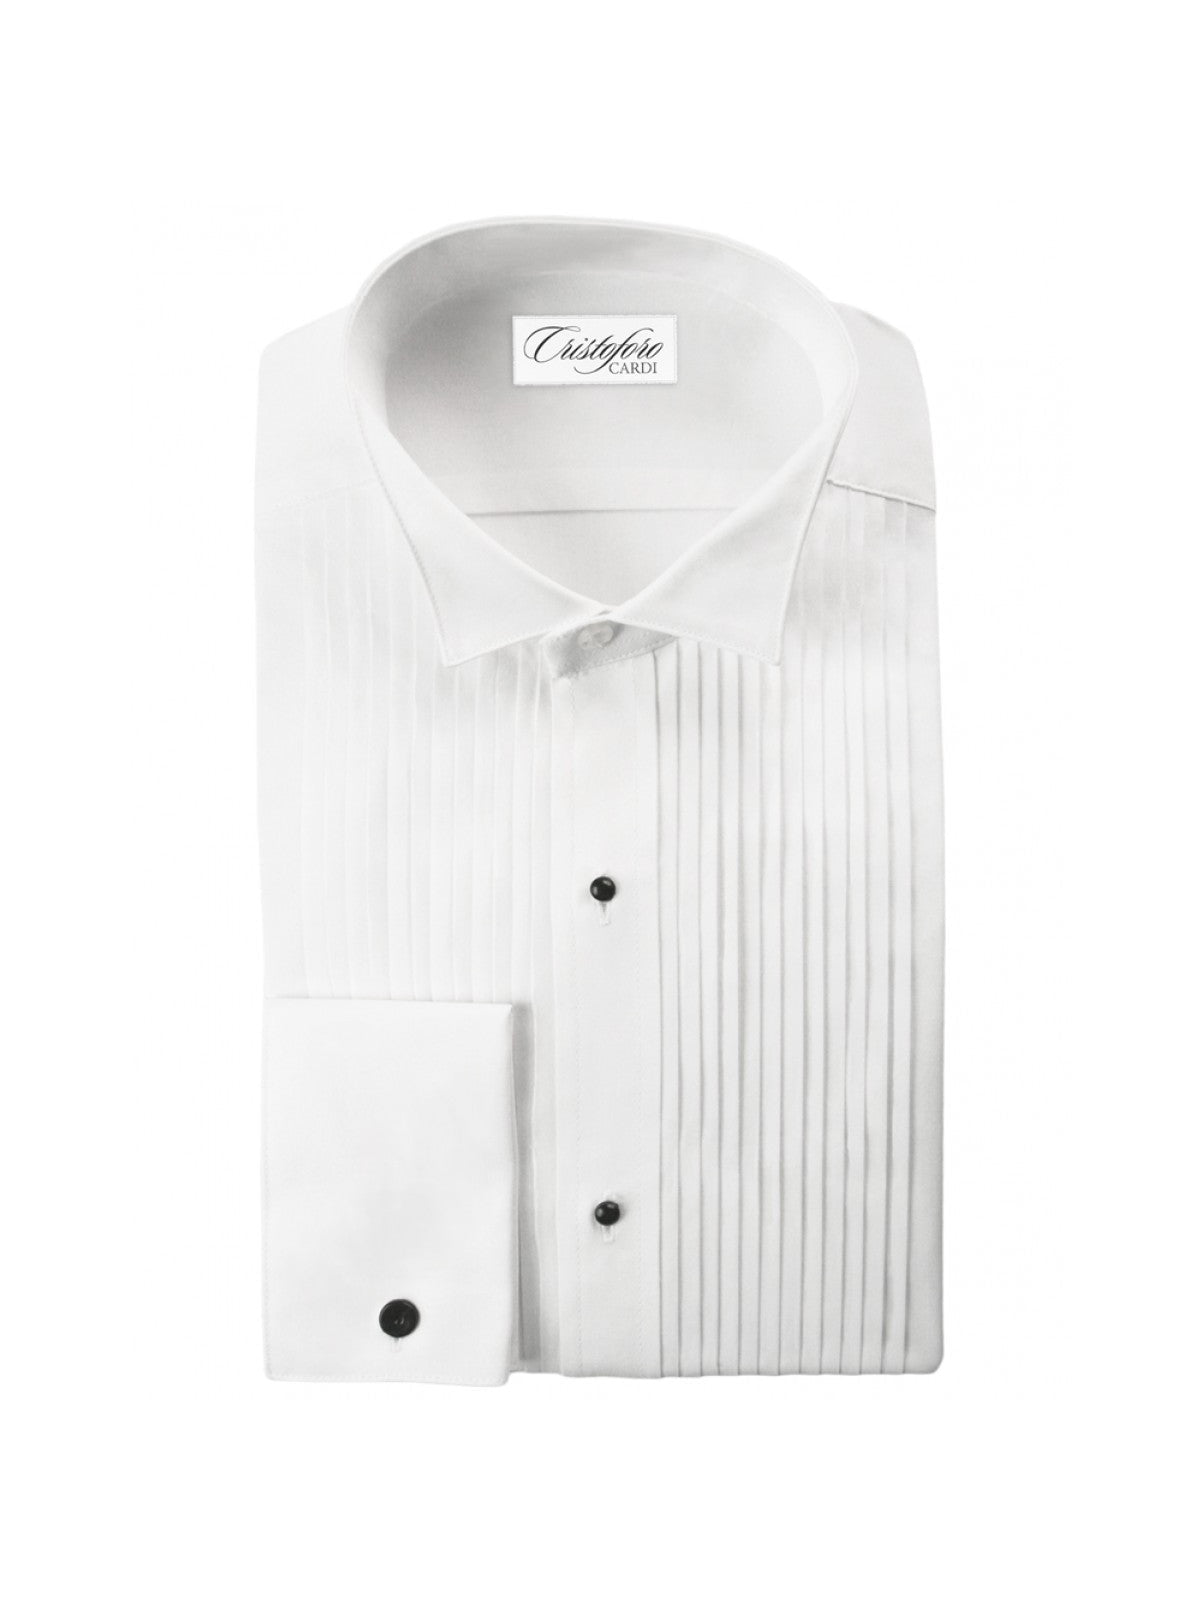 White Cotton Wing Collar (Verona) Tuxedo Shirt by Cristoforo Cardi